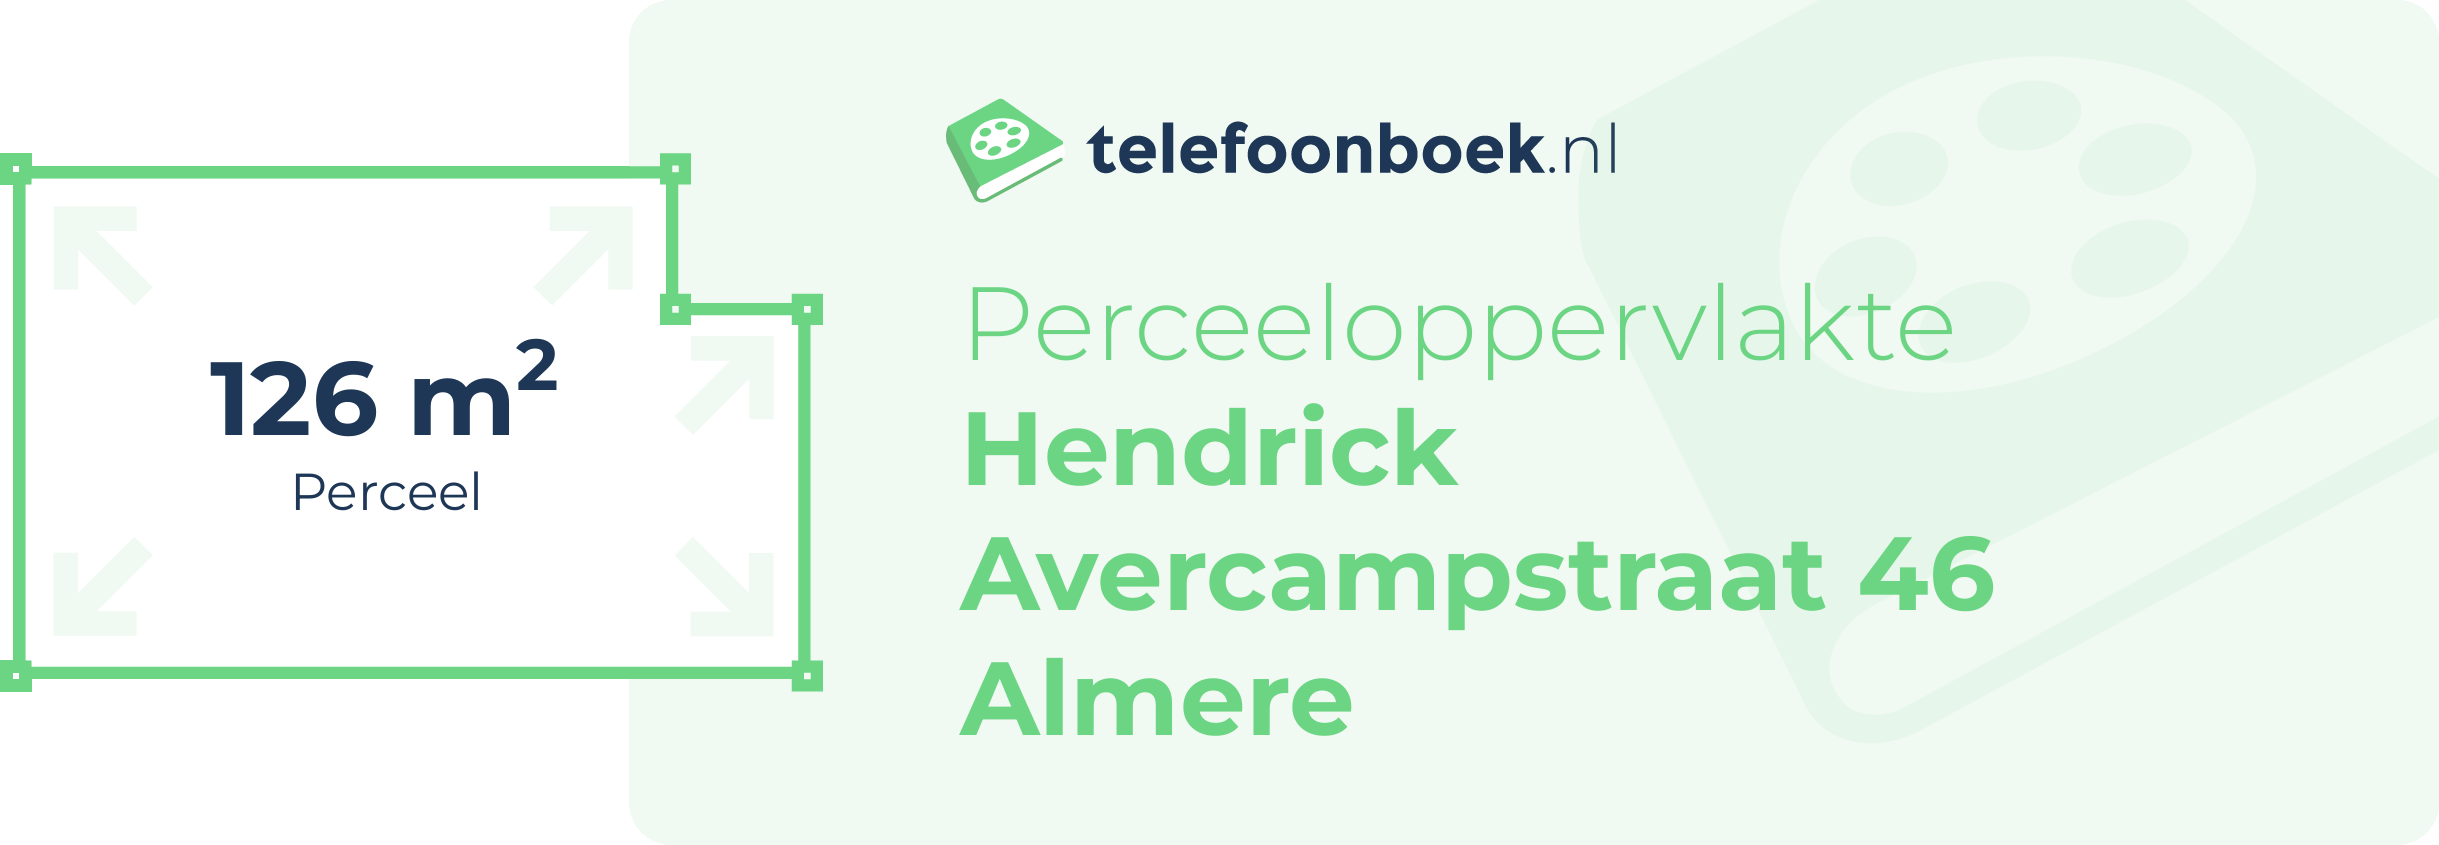 Perceeloppervlakte Hendrick Avercampstraat 46 Almere